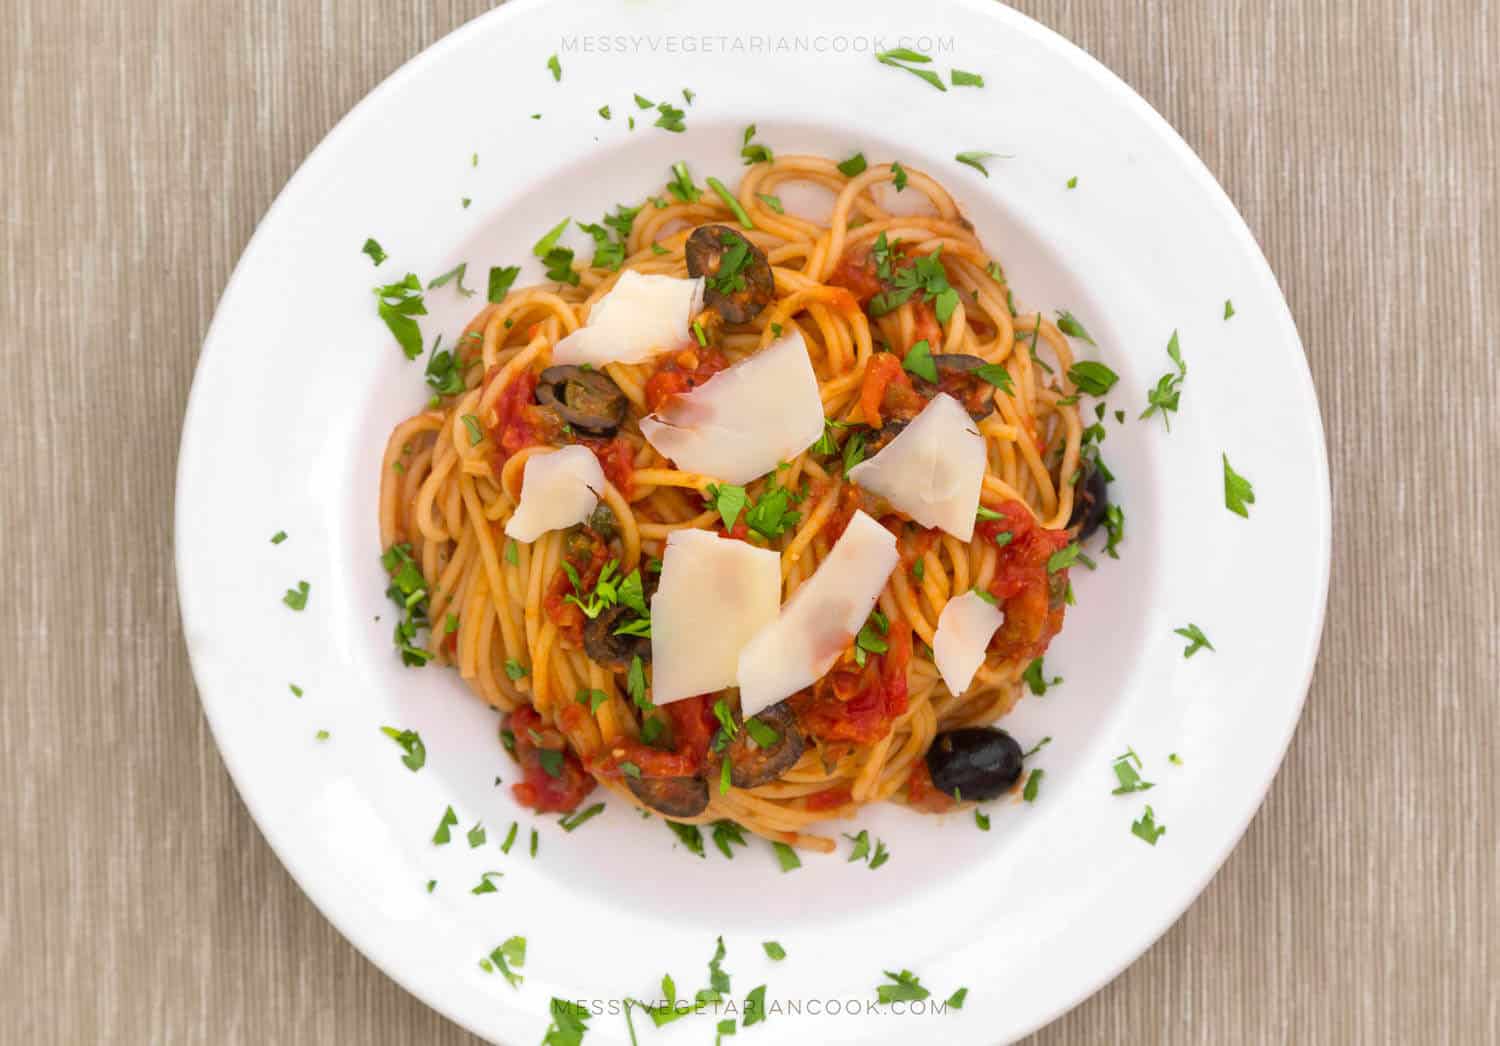 Vegan spaghetti Puttanesca